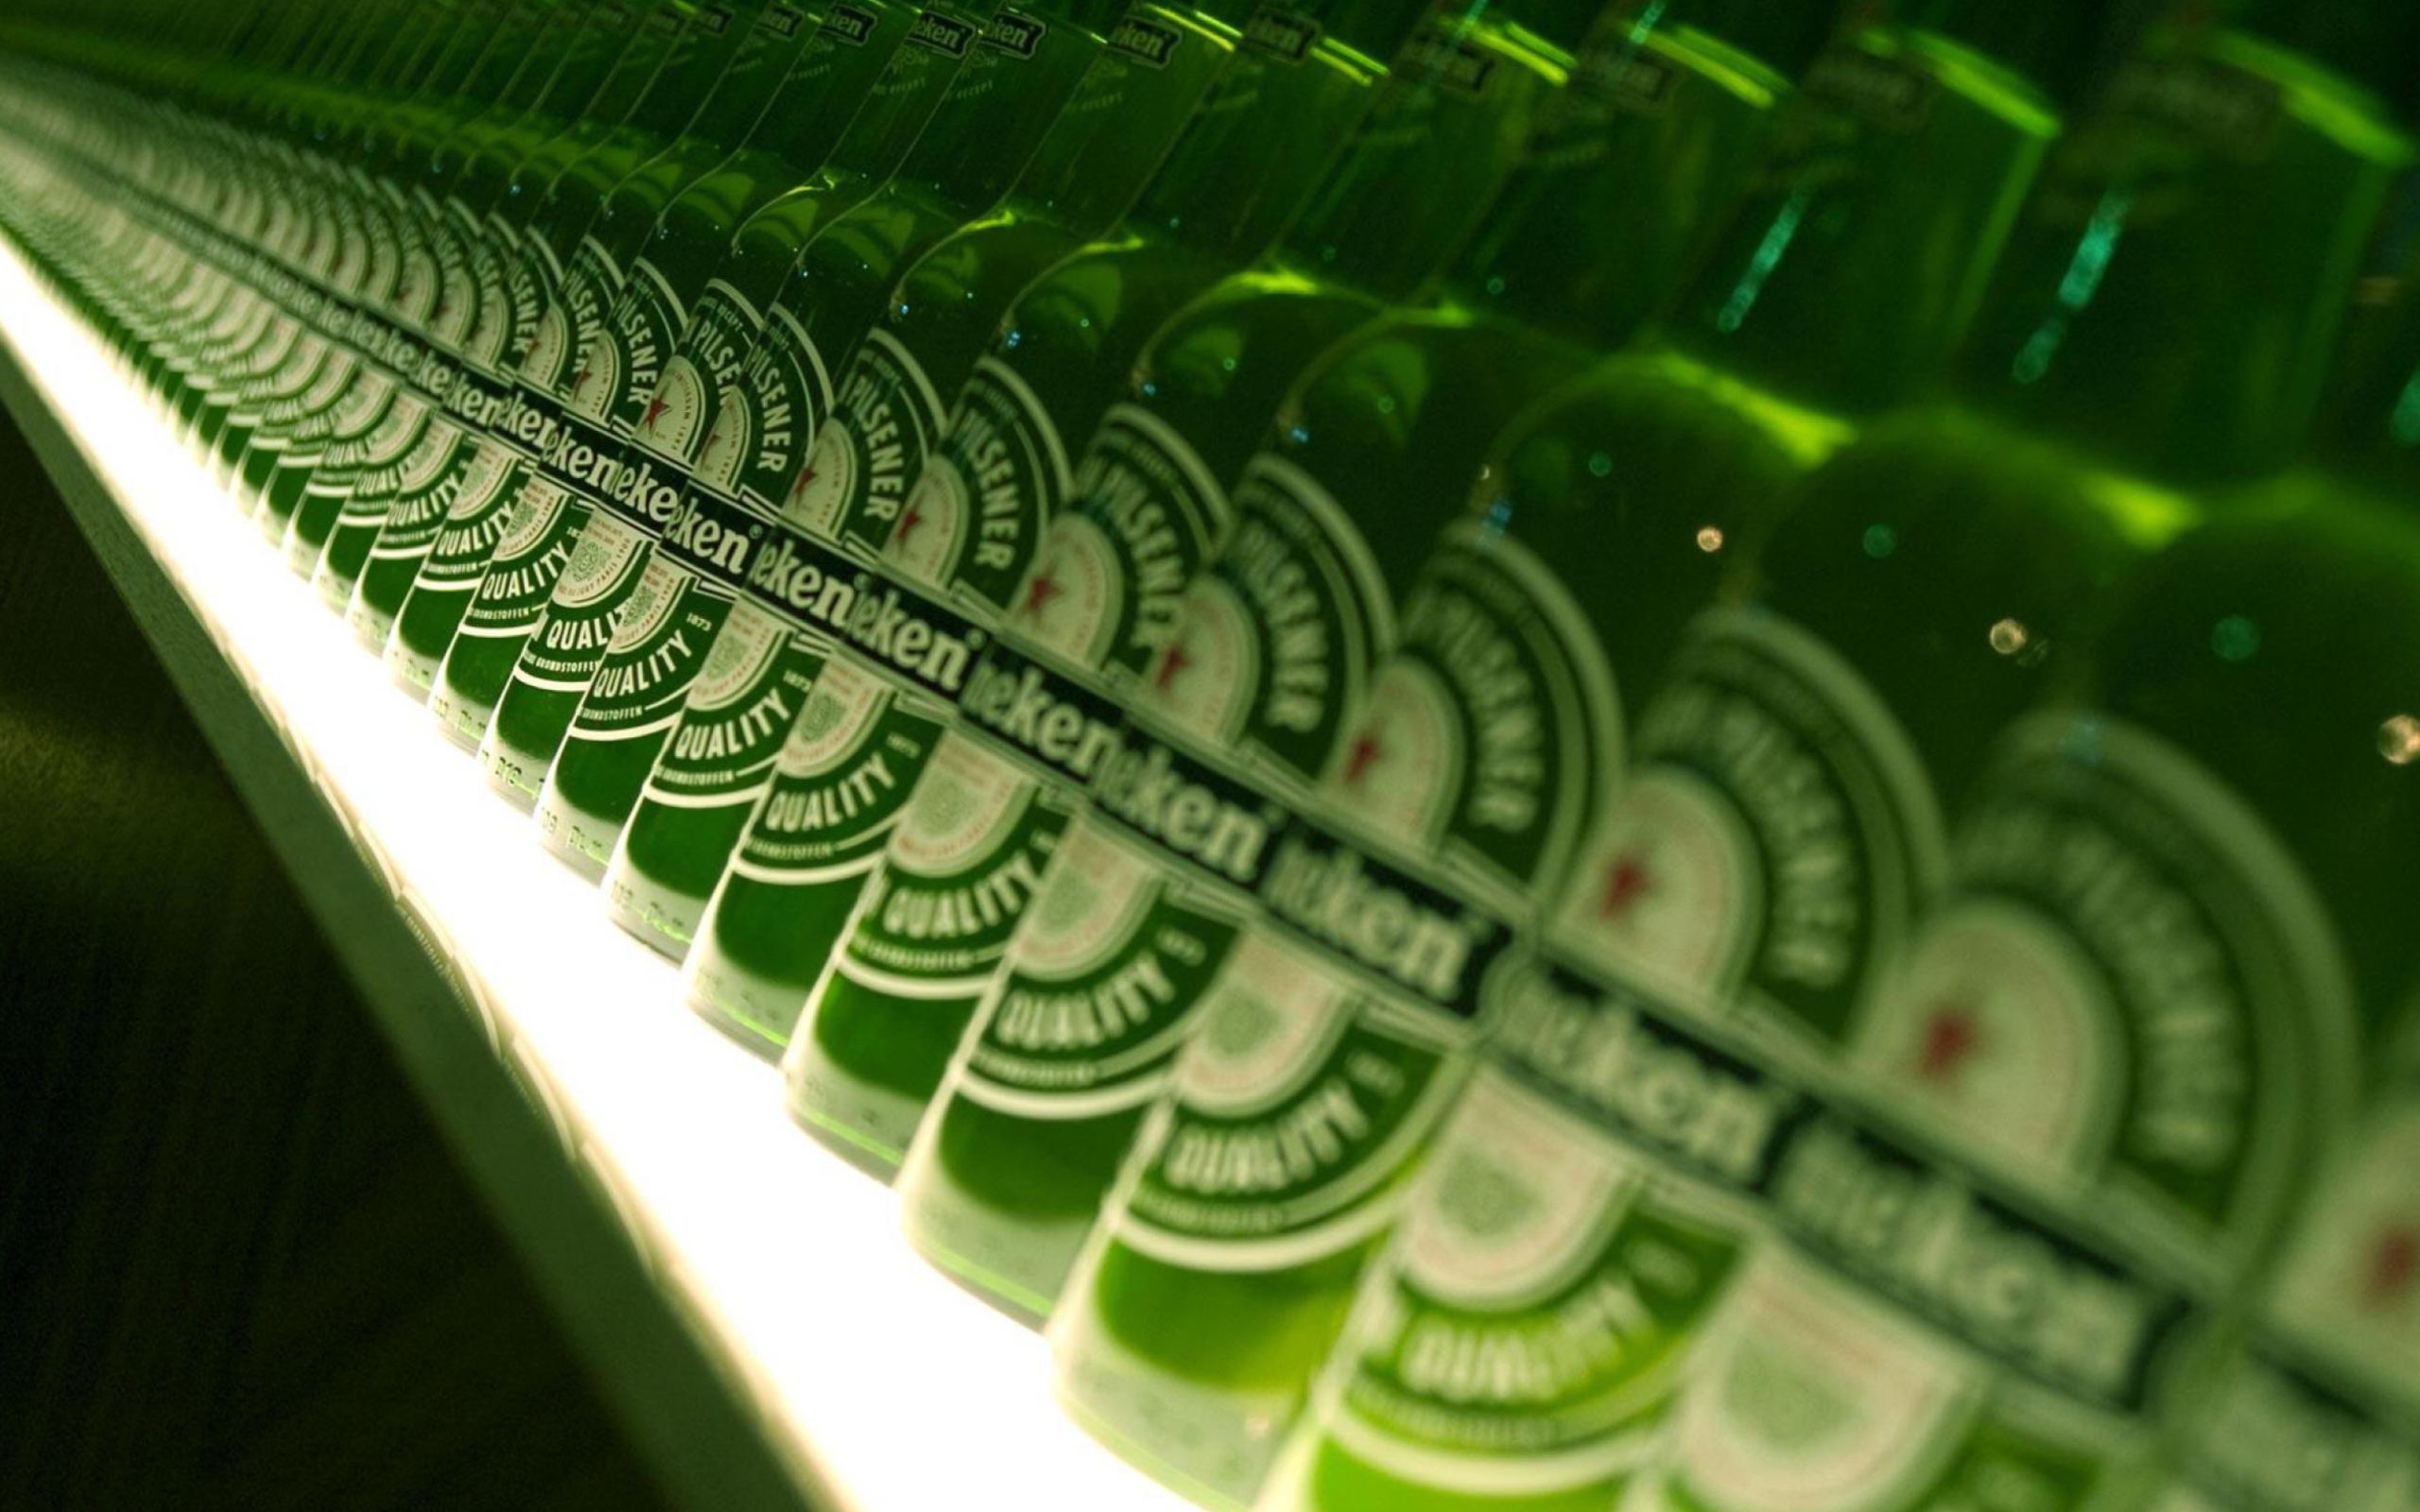 Heineken Beer screenshot #1 2560x1600